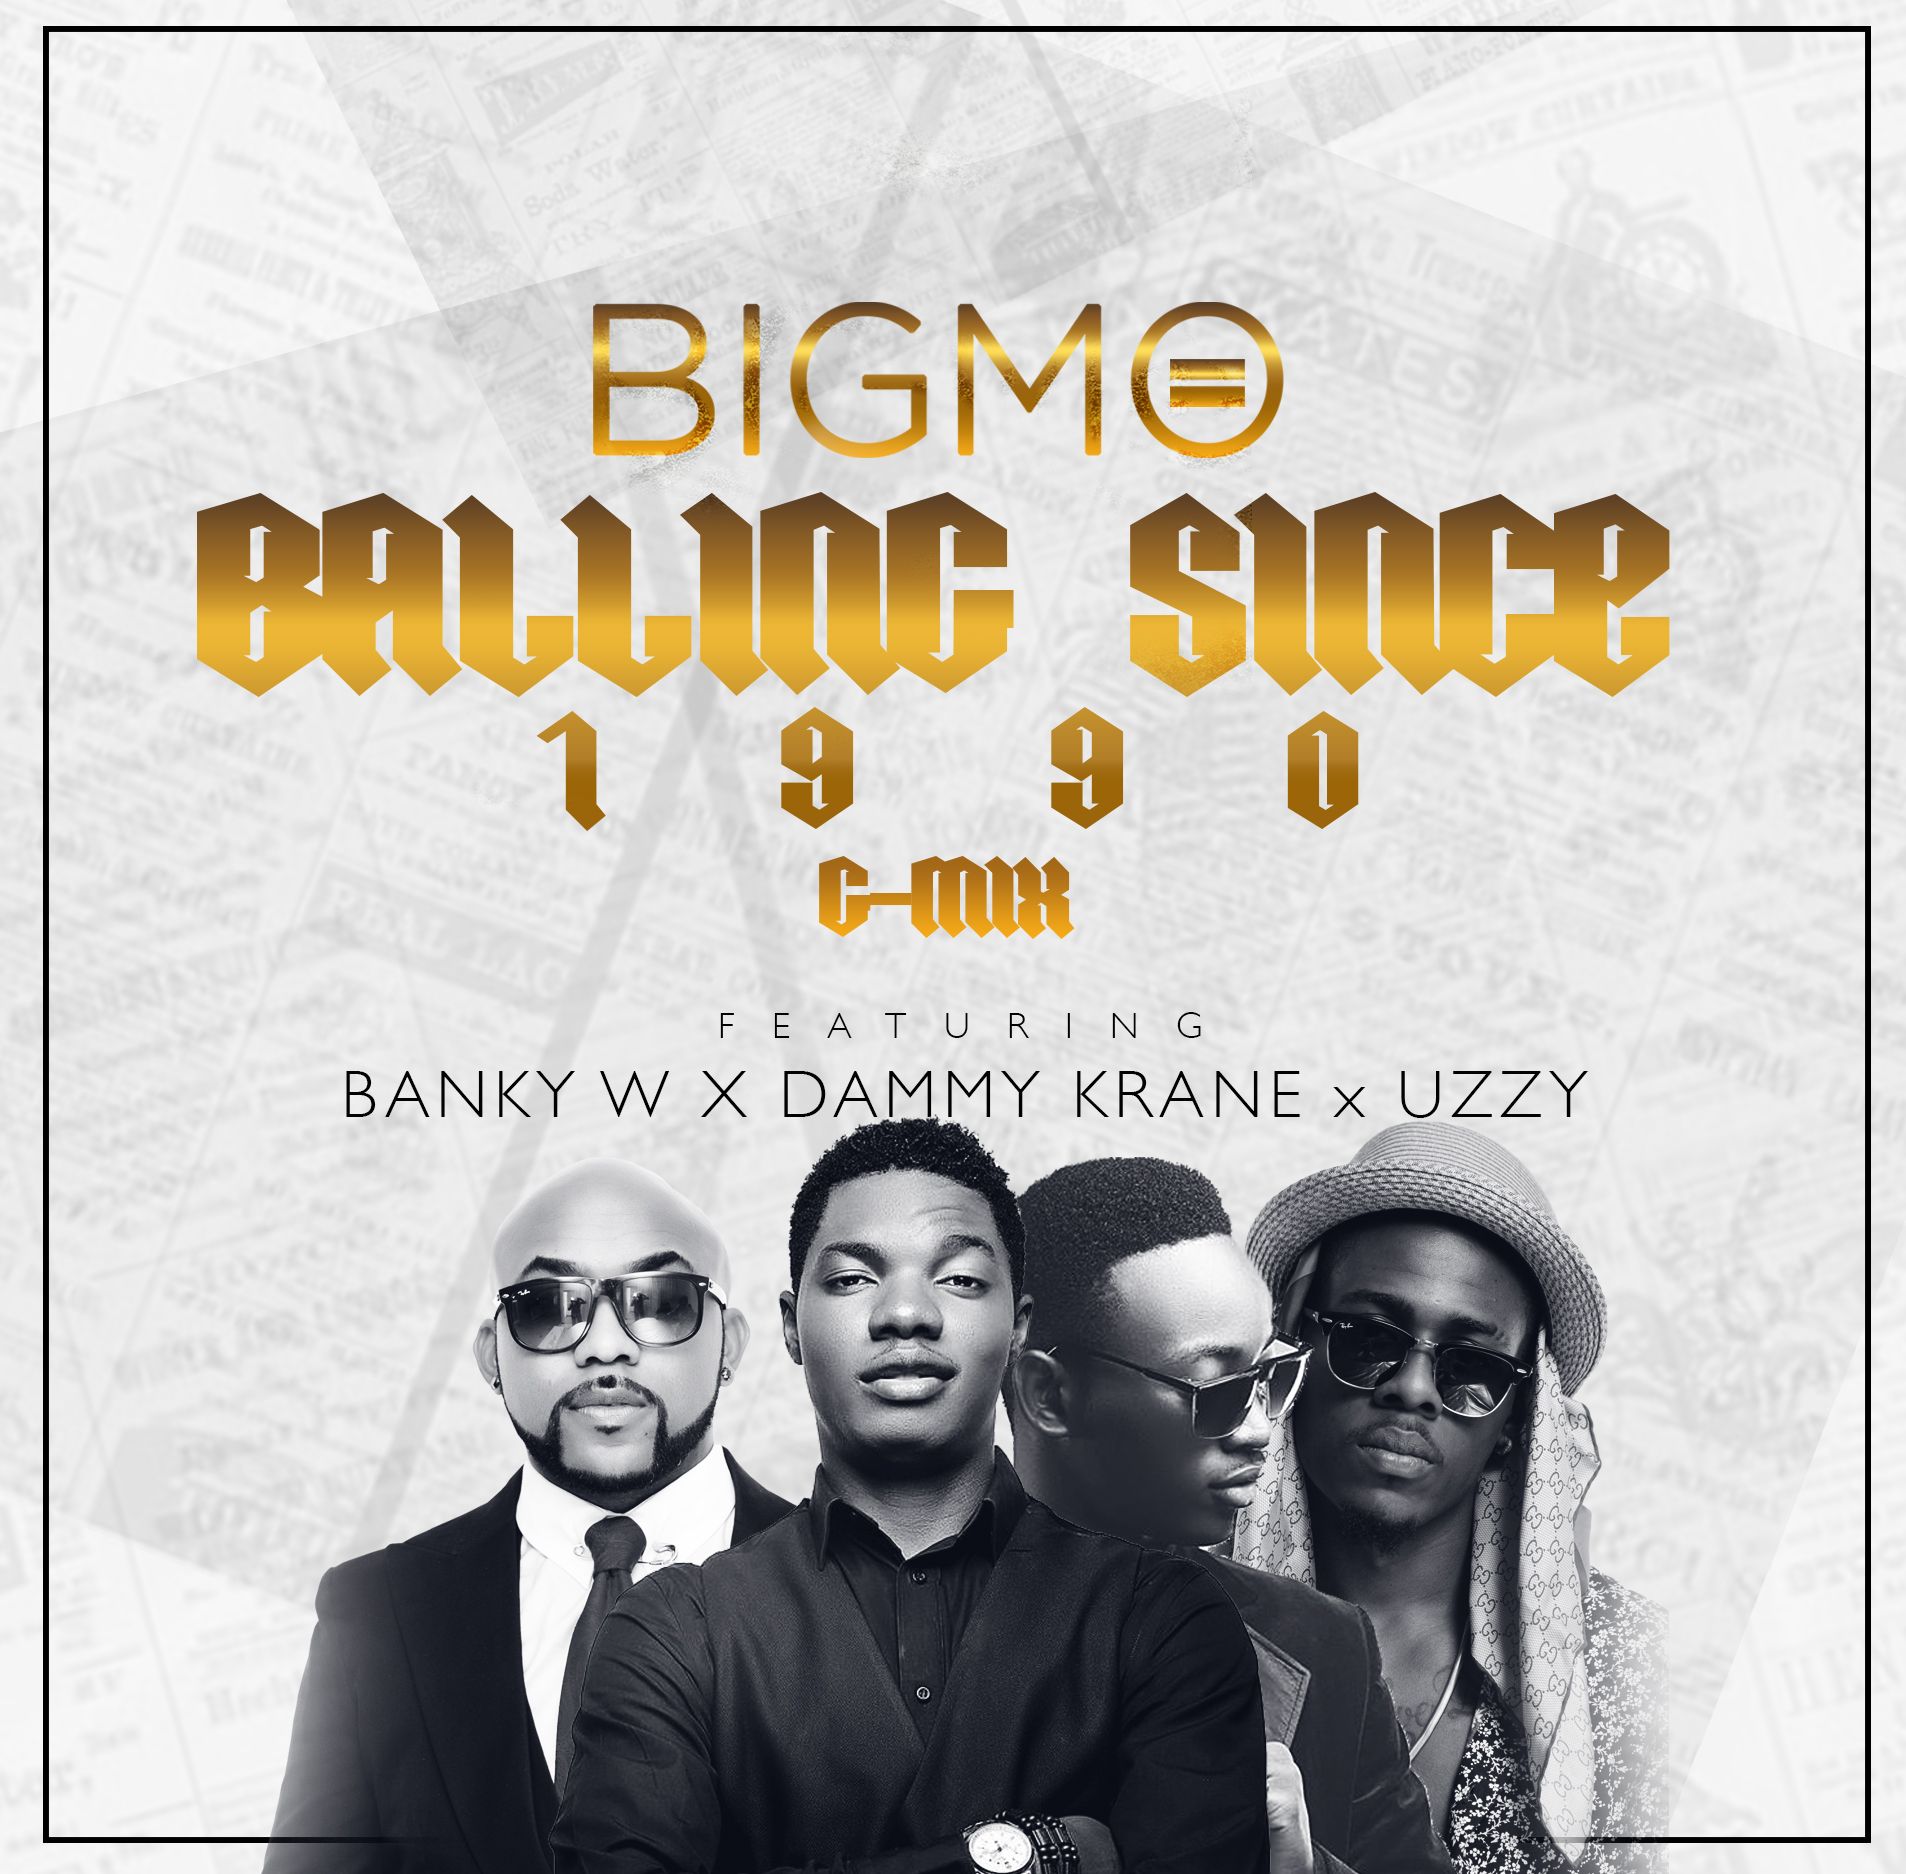 Big Mo ft. Banky W, Dammy Krane & Uzzy – BALLING SINCE 1990 (G-Mix) Artwork | AceWorldTeam.com